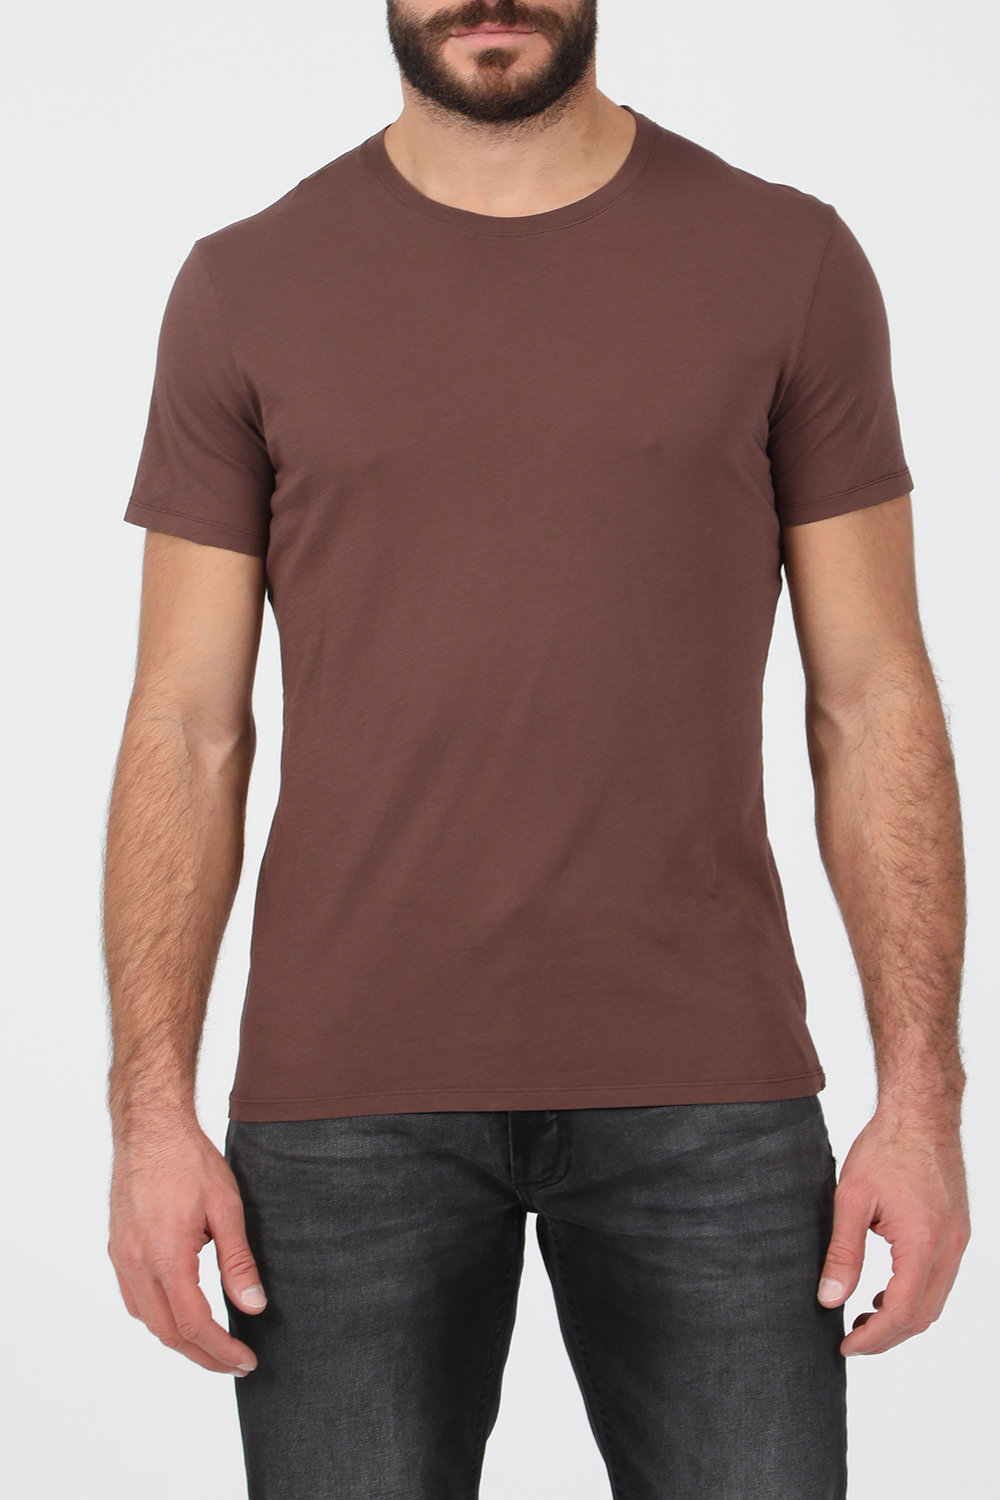 Ανδρικά/Ρούχα/Μπλούζες/Κοντομάνικες AMERICAN VINTAGE - Ανδρική κοντομάνικη μπλούζα AMERICAN VINTAGE καφέ